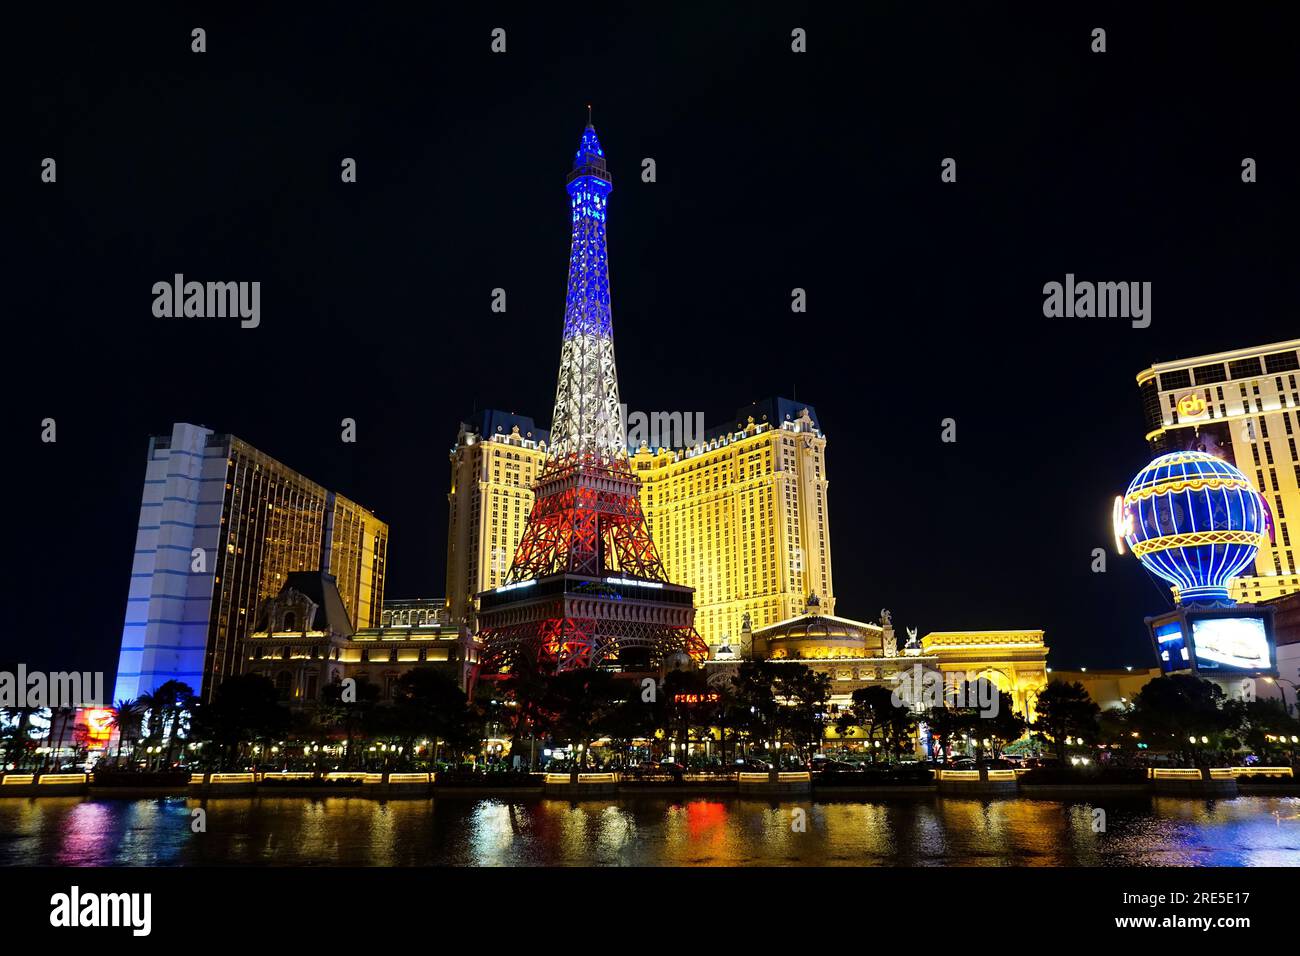 90+ Paris Casino Resort On The Las Vegas Strip Stock Photos